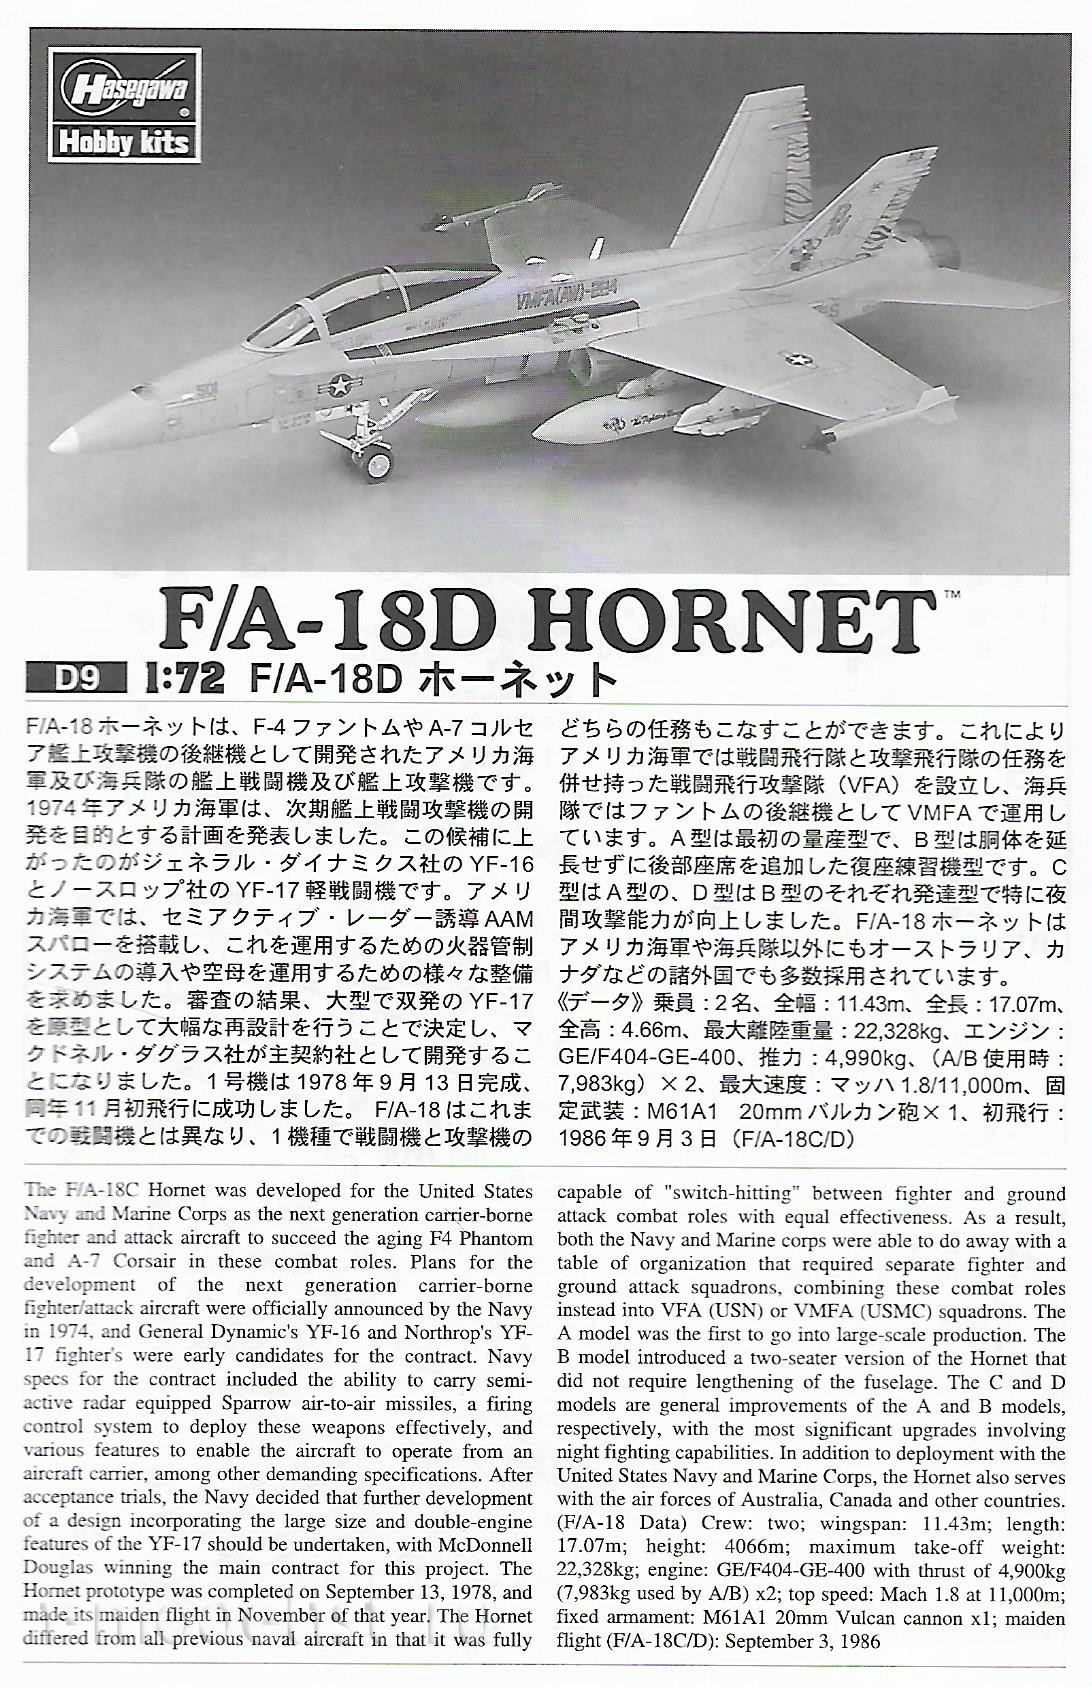 00439 Hasegawa 1/72 F/A-18D Hornet